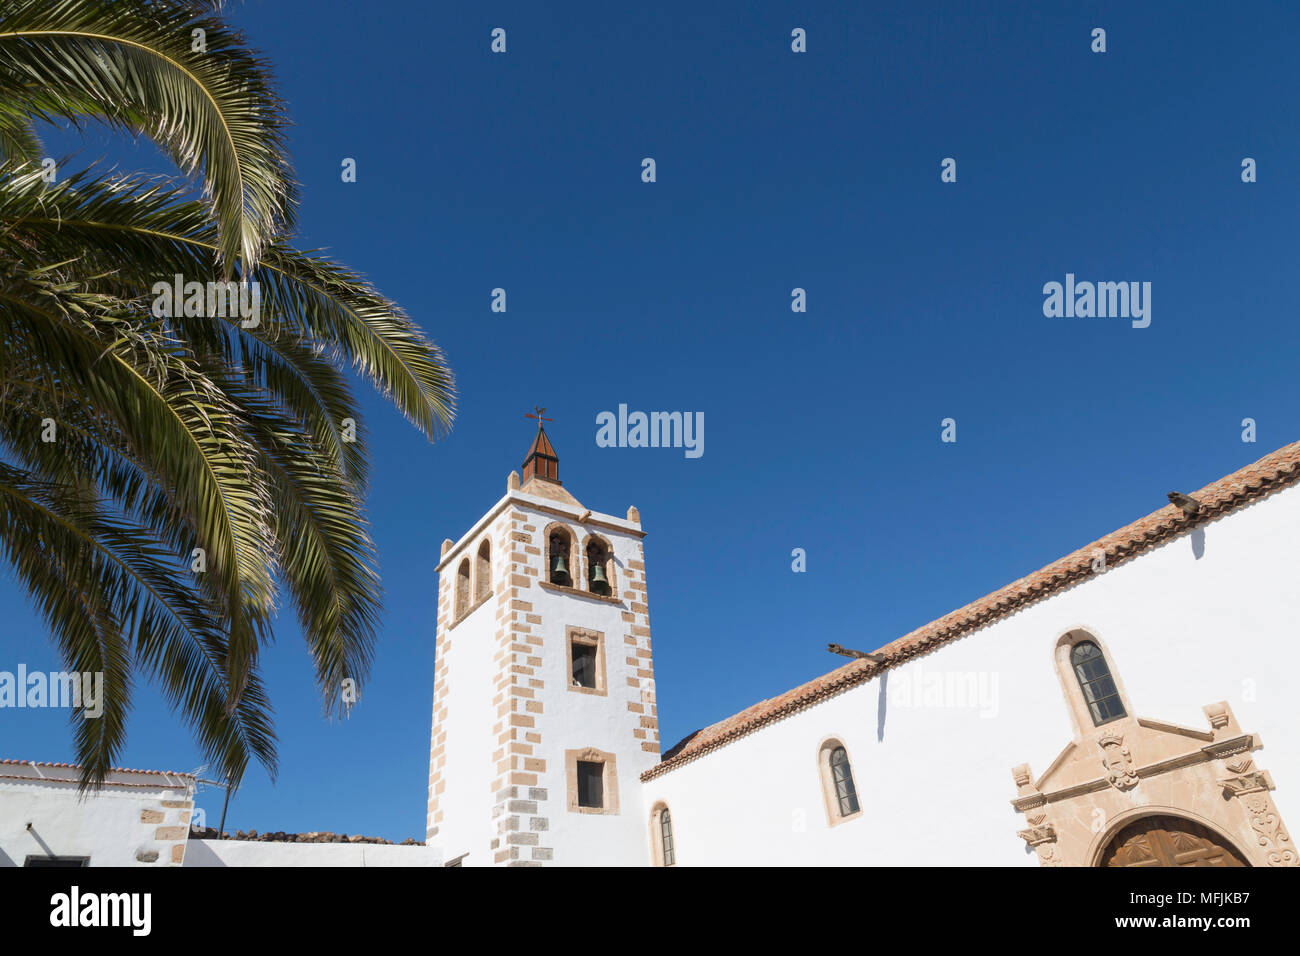 Kirche Santa Maria in der kleinen Stadt Betancuria auf der Vulkaninsel Fuerteventura, Kanarische Inseln, Spanien, Atlantik, Europa Stockfoto